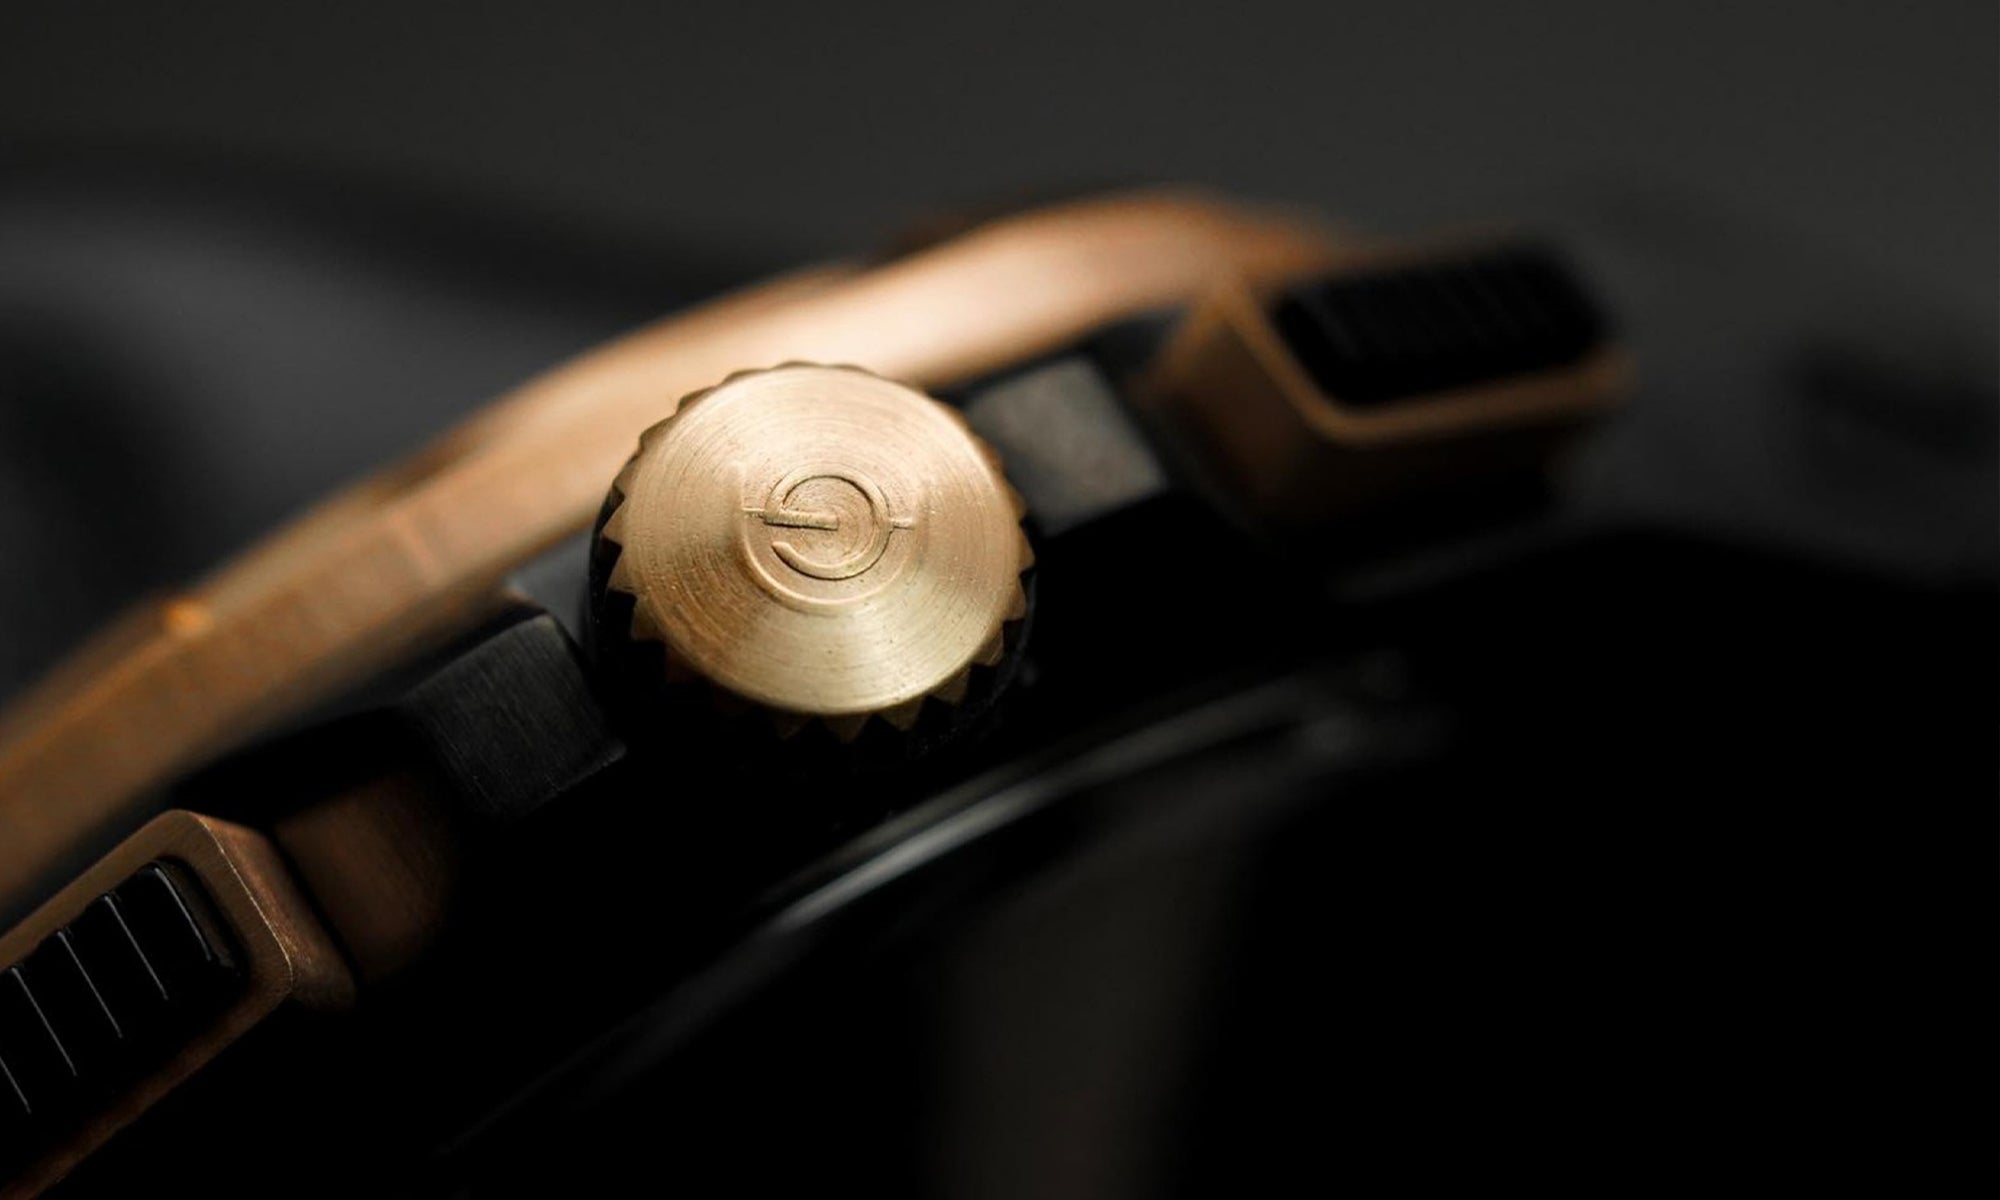 白羊座金色模拟闪电金不锈钢 G 7016 BK-BK 黑色橡胶表带男士手表 - H2 Hub 手表